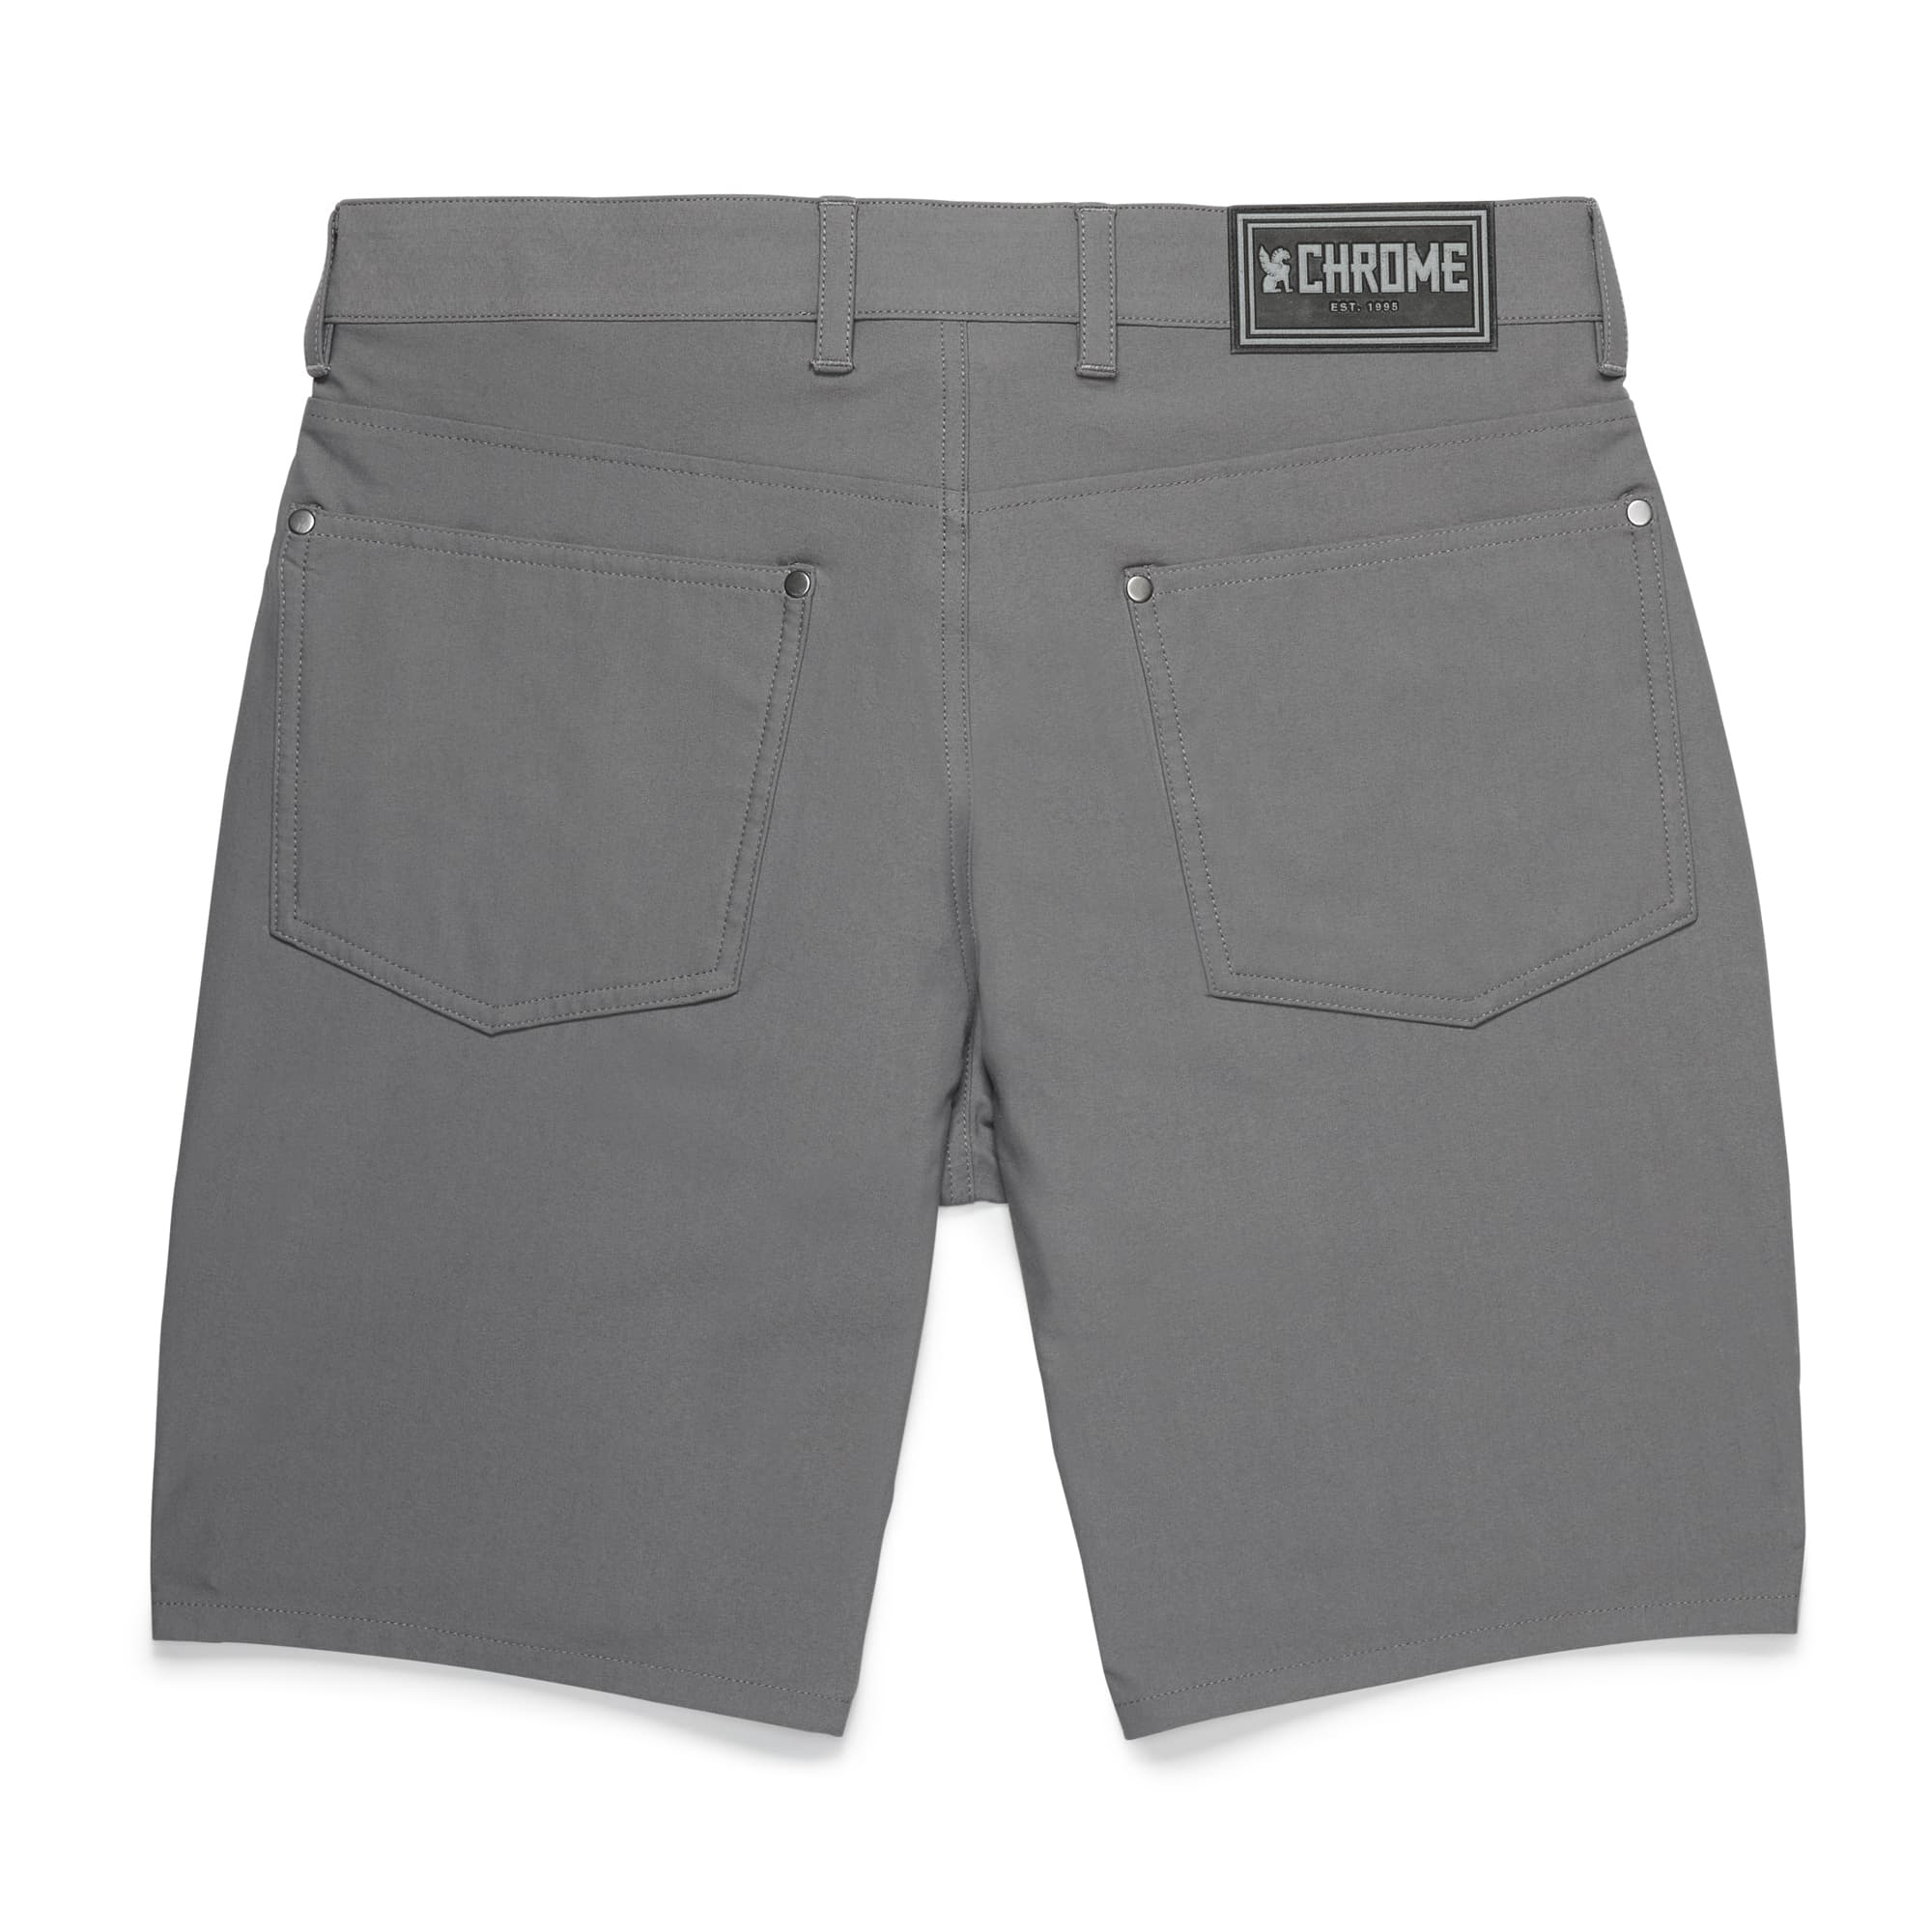 Men's Madrona 5-pocket short in grey back view #color_castle rock